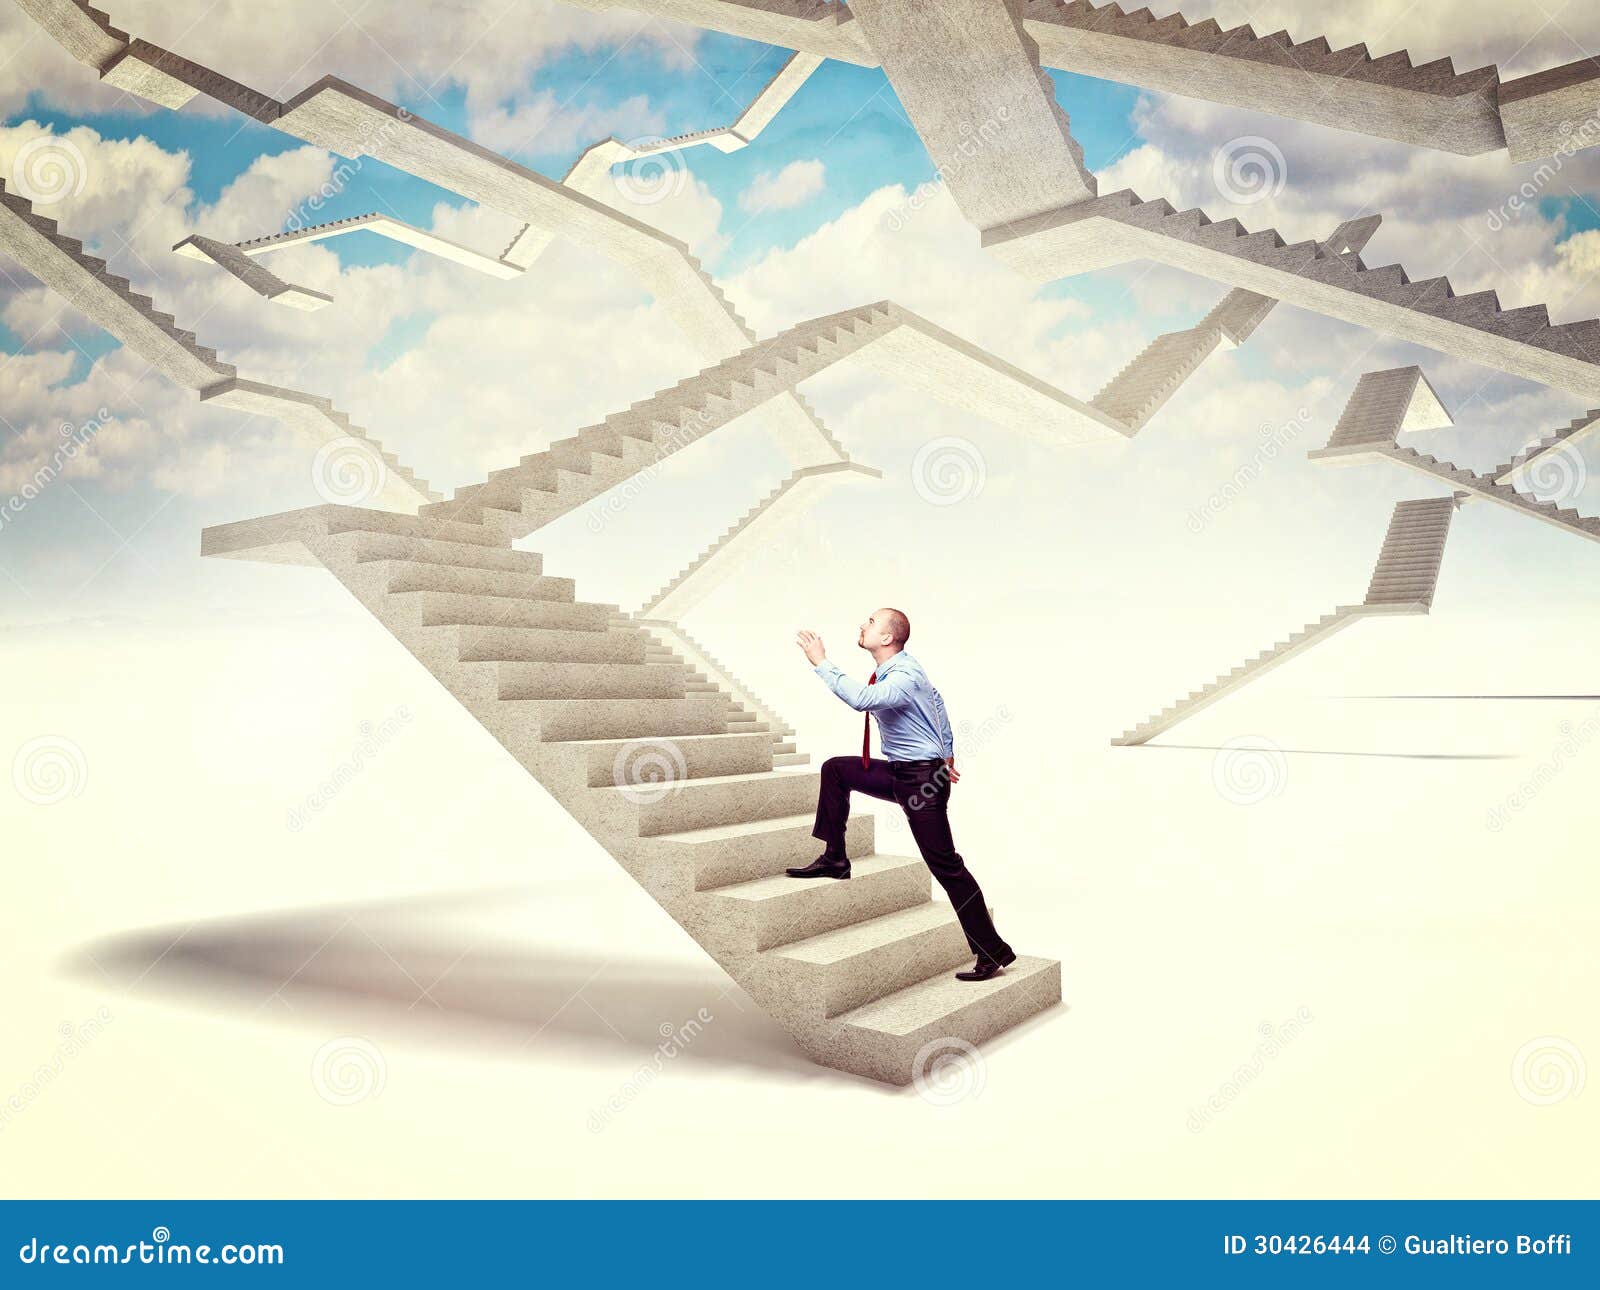 Вам нужно подняться по лестнице. Человек на лестнице. Лестница жизни. Стремление к достижению цели. Лестница в будущее.